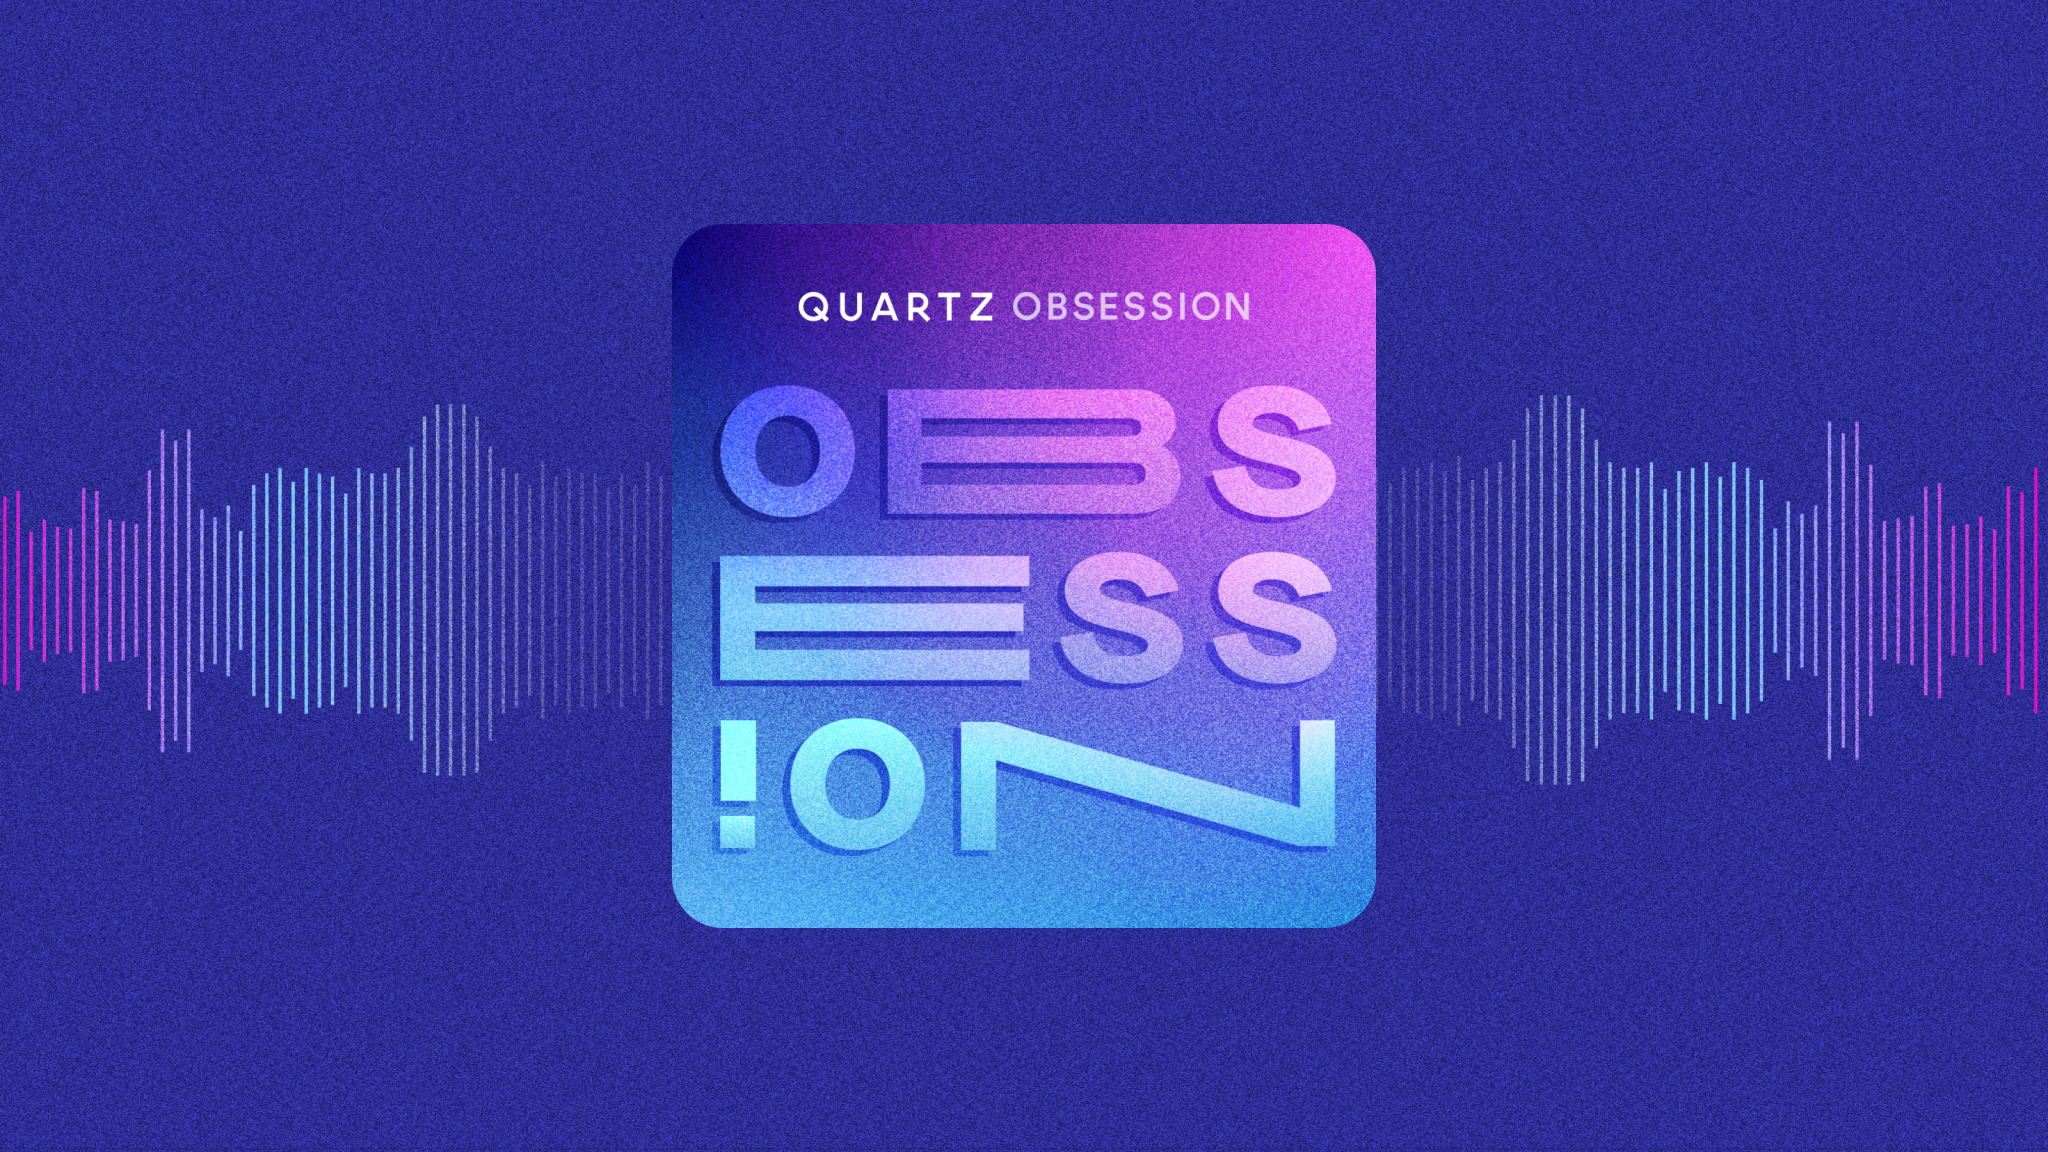 The Quartz Obsession podcast